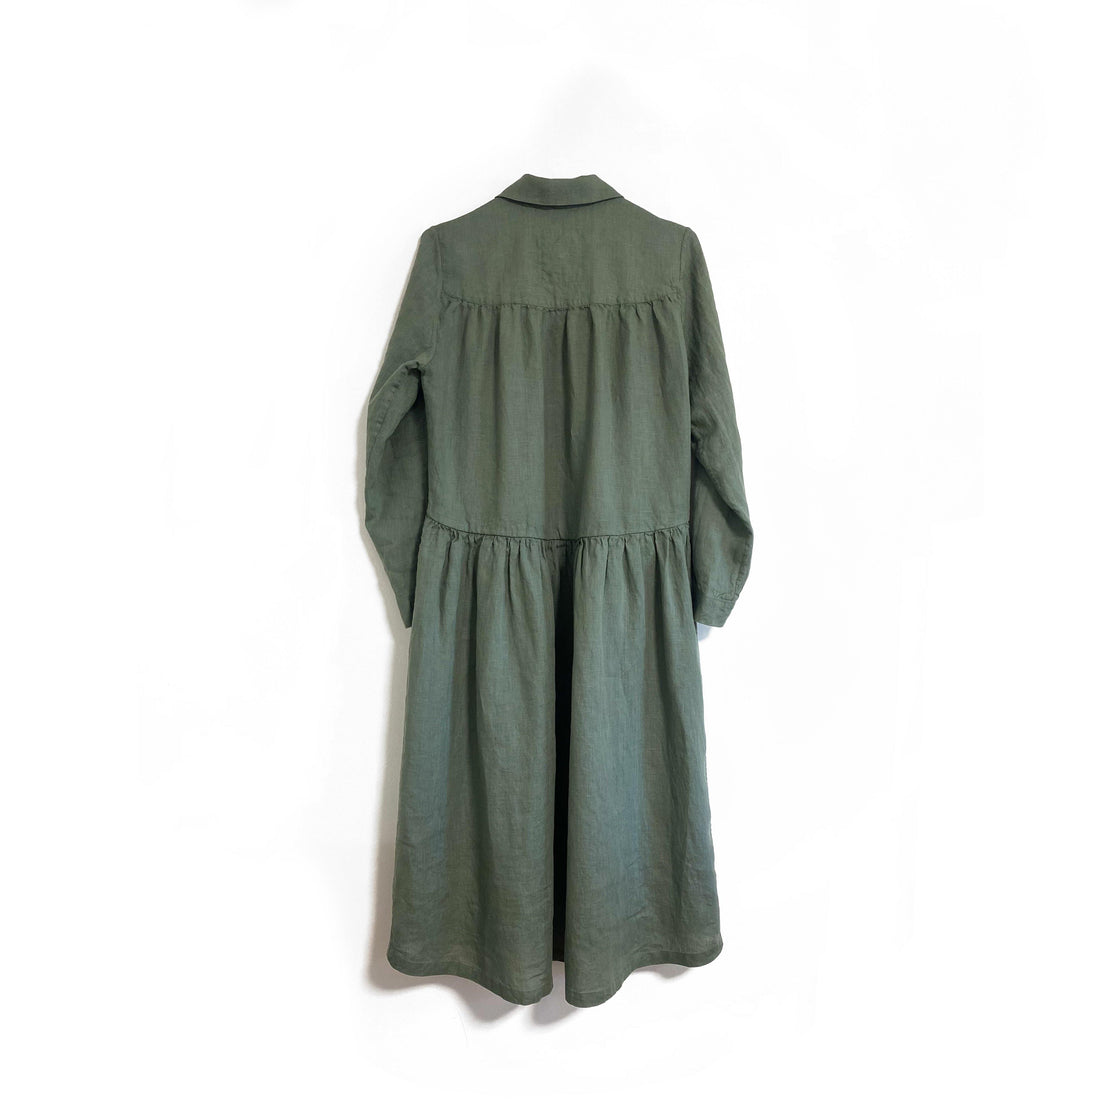 Green linen dress - Manufacture de Lin